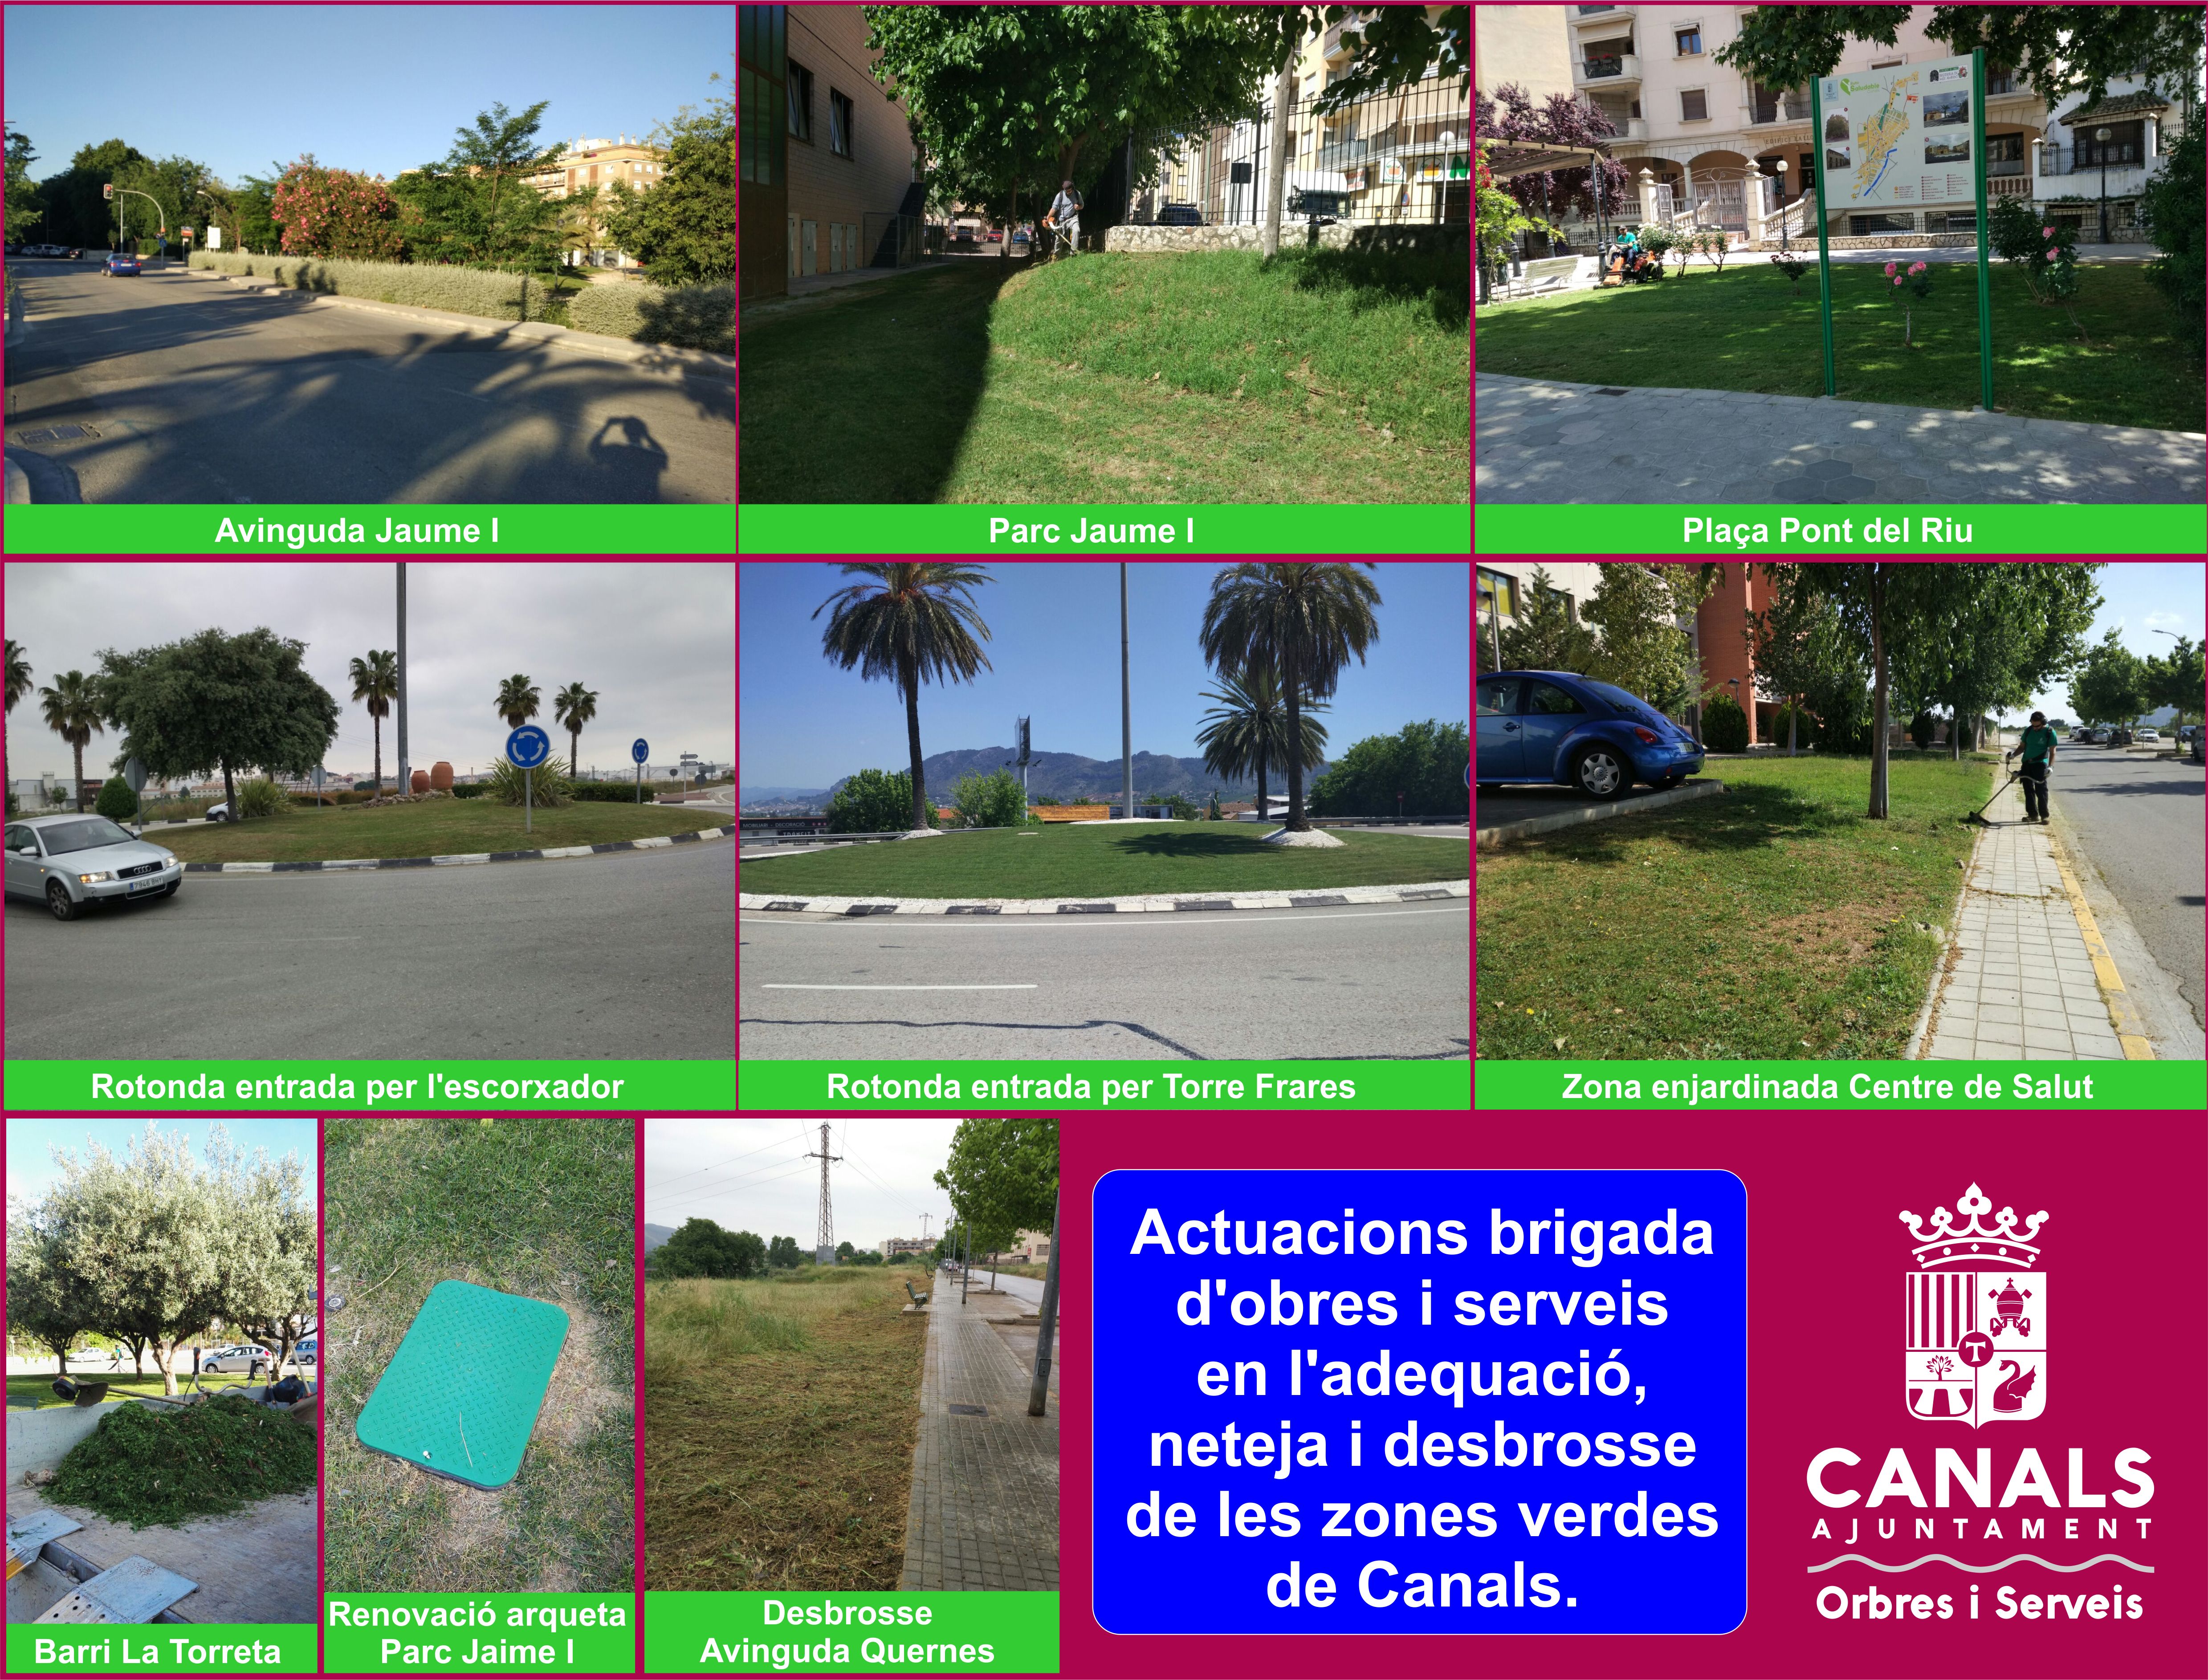 2017.05.10 Desbrosse parcs i jardins. Ajuntament de Canals